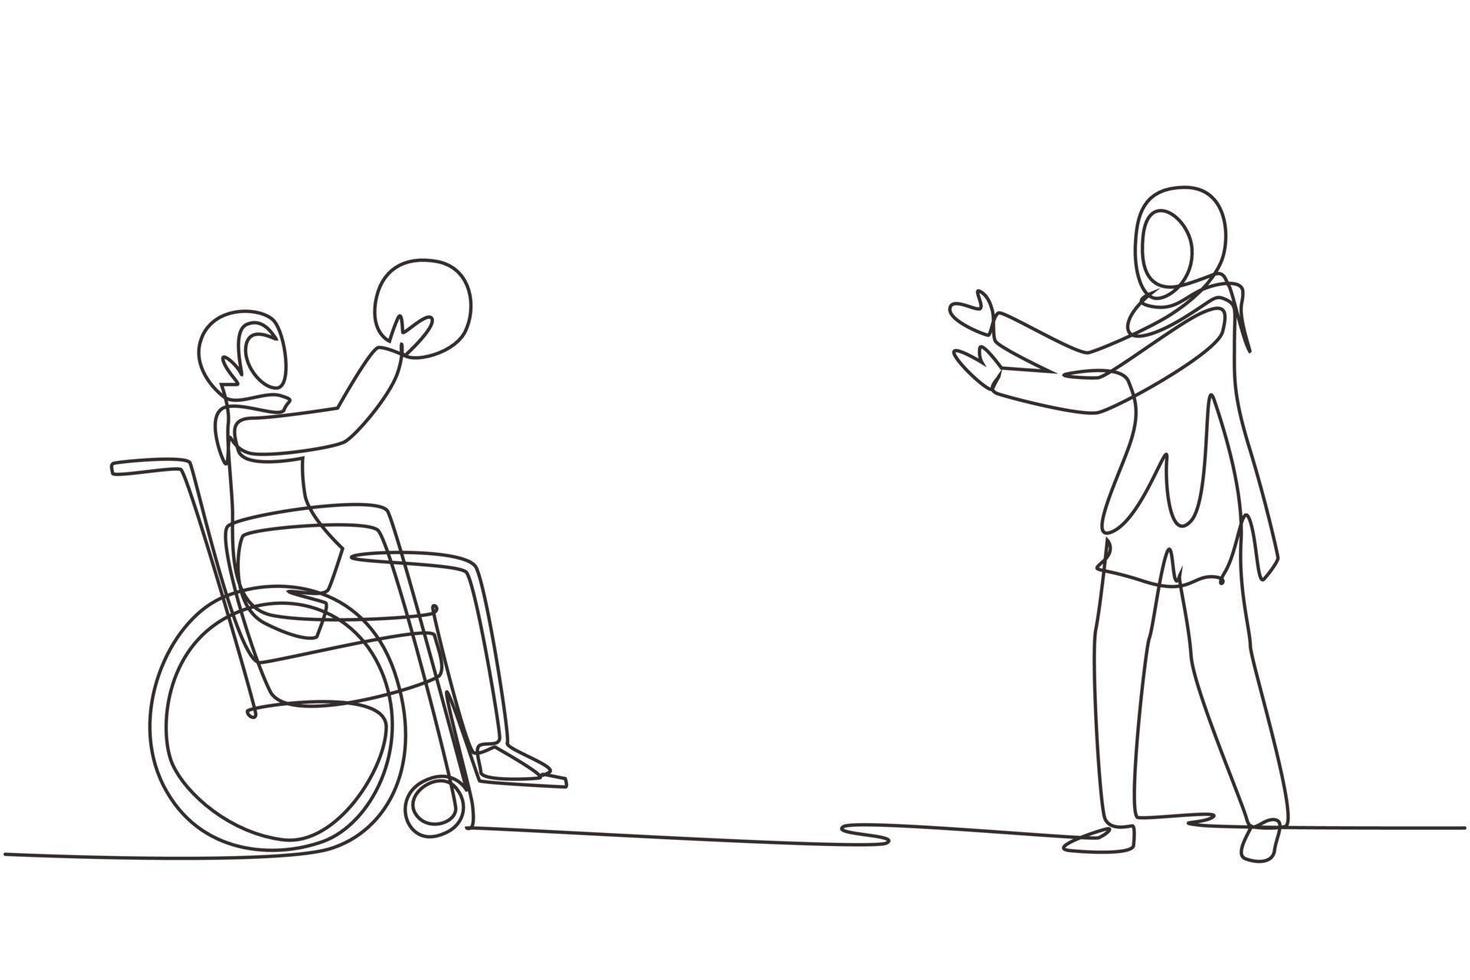 enda en rad ritning lycklig livsstil av funktionshindrade människor koncept. liten arabisk flicka i rullstol spelar boll med kvinnlig vän utomhus levande aktiv livsstil. kontinuerlig linje rita design vektor